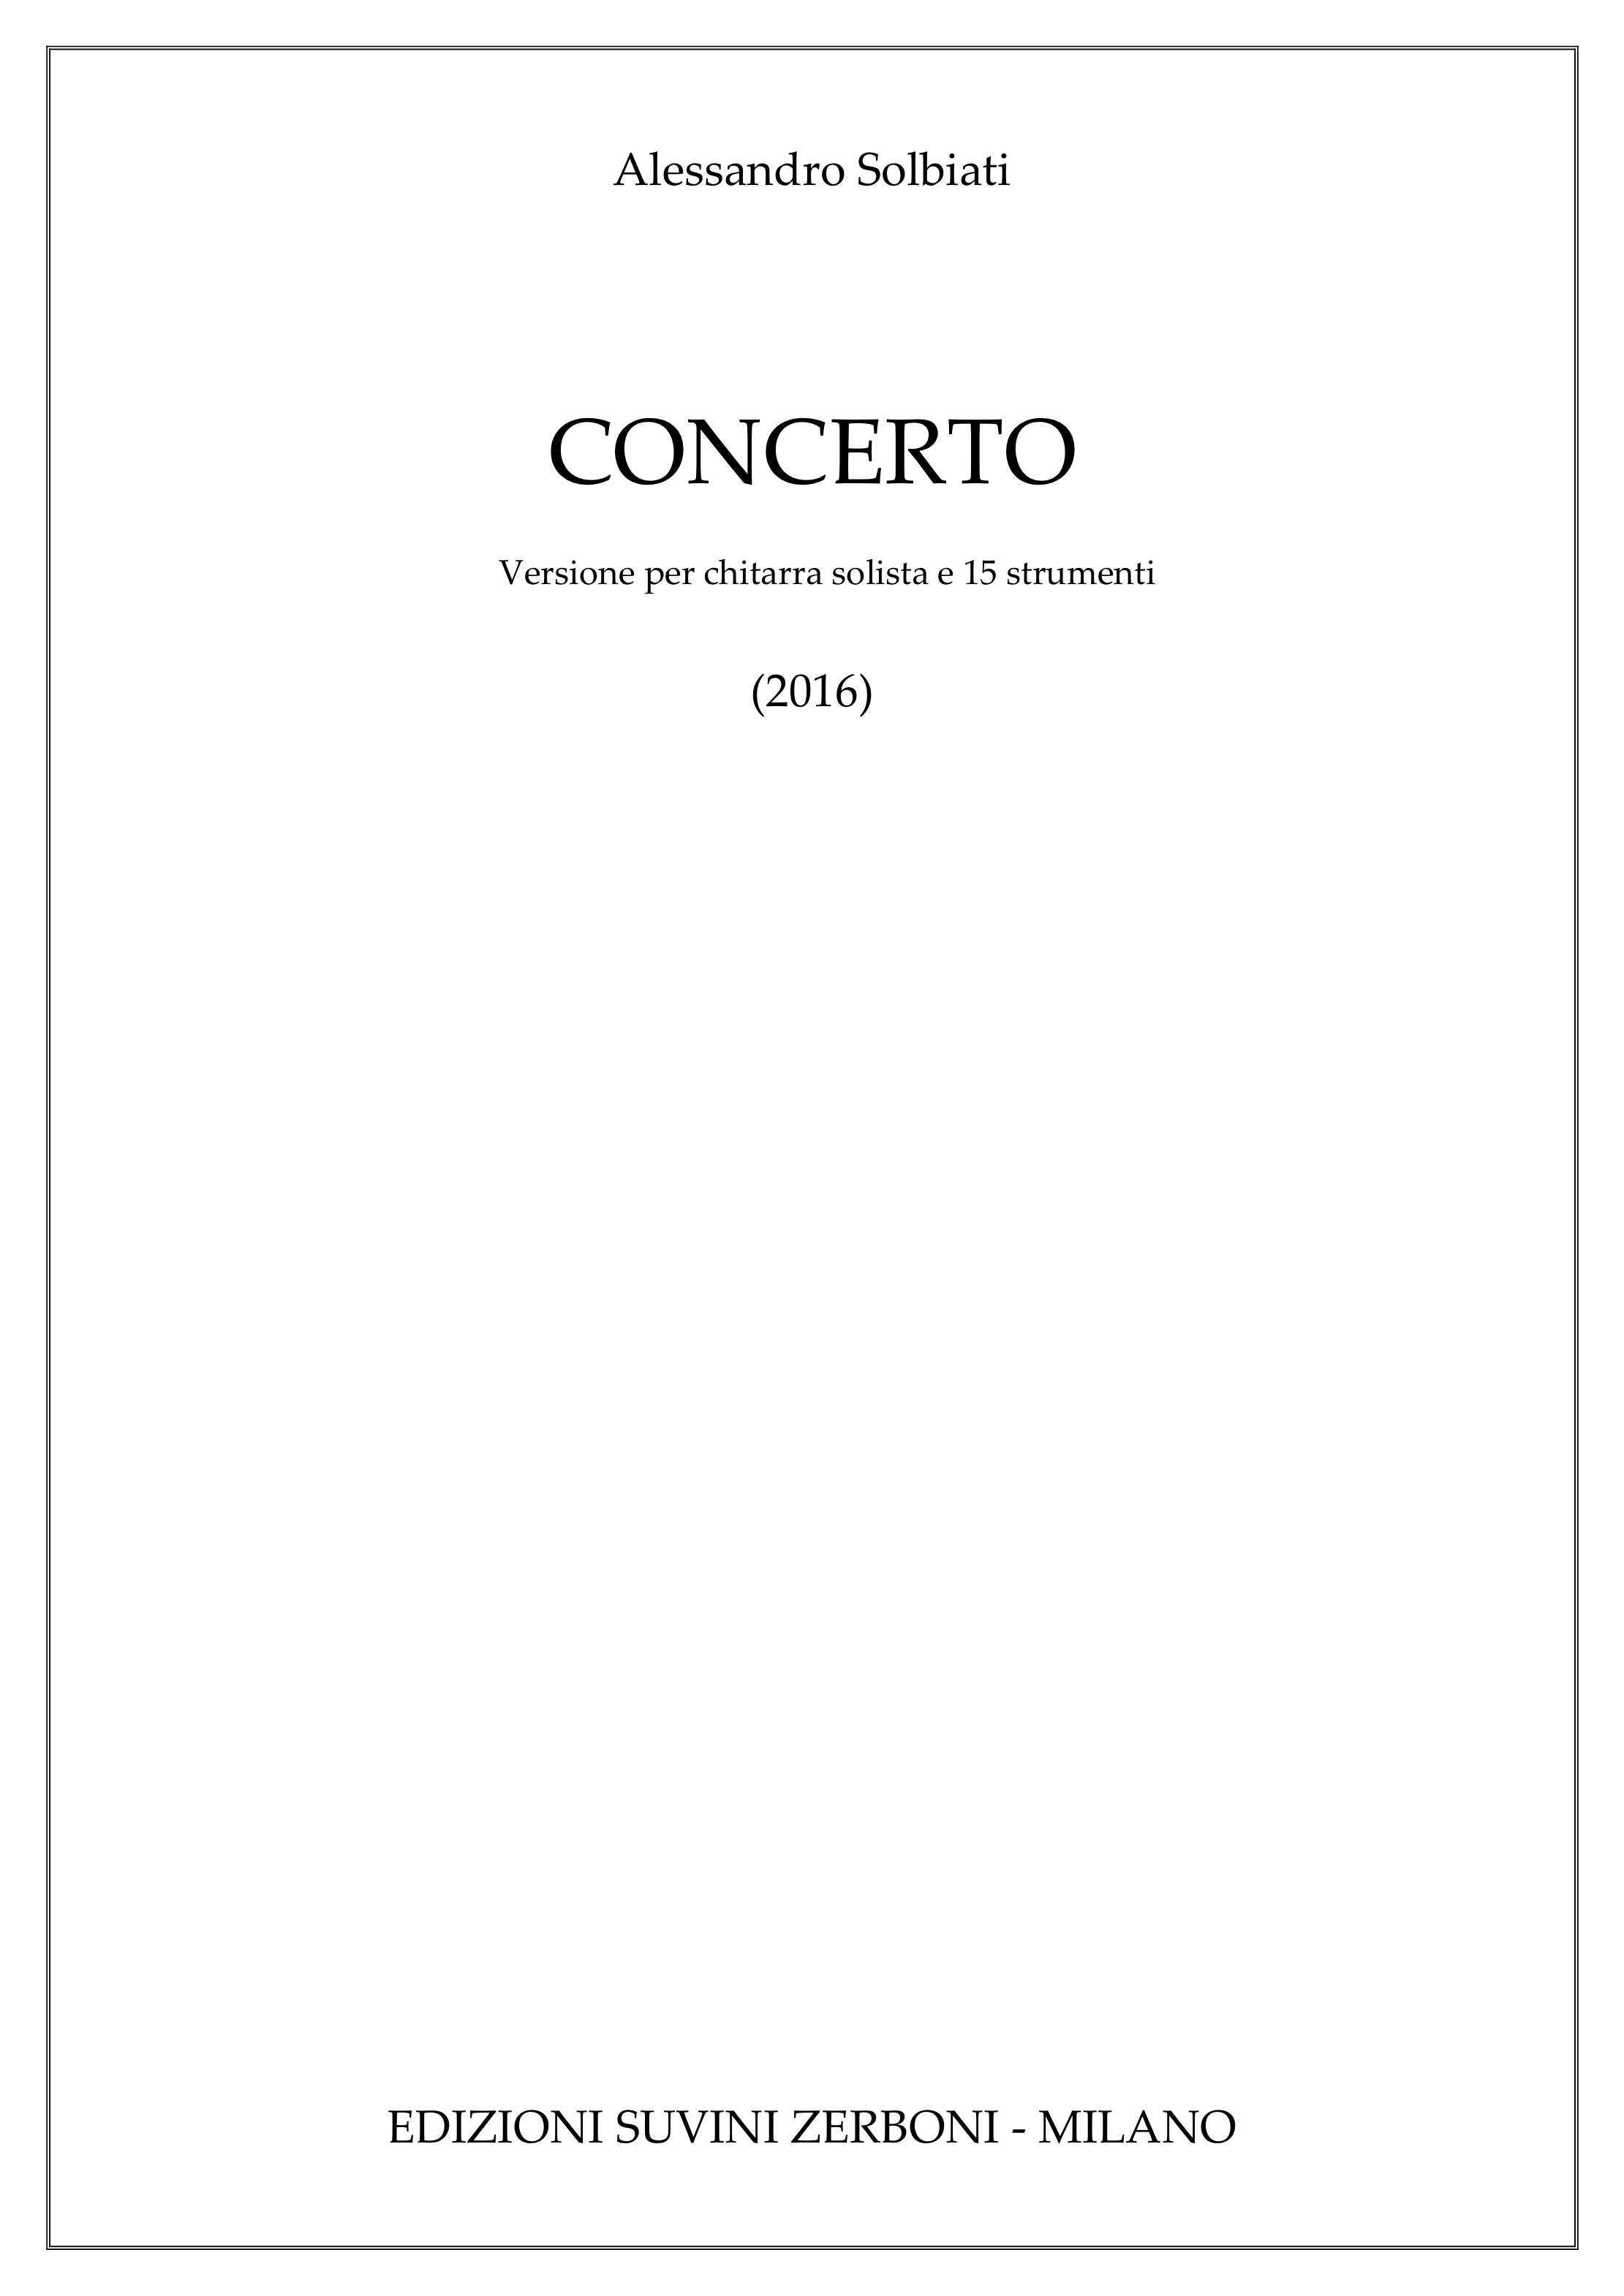 Concerto per chitarra e 15 strumenti_Solbiati 1